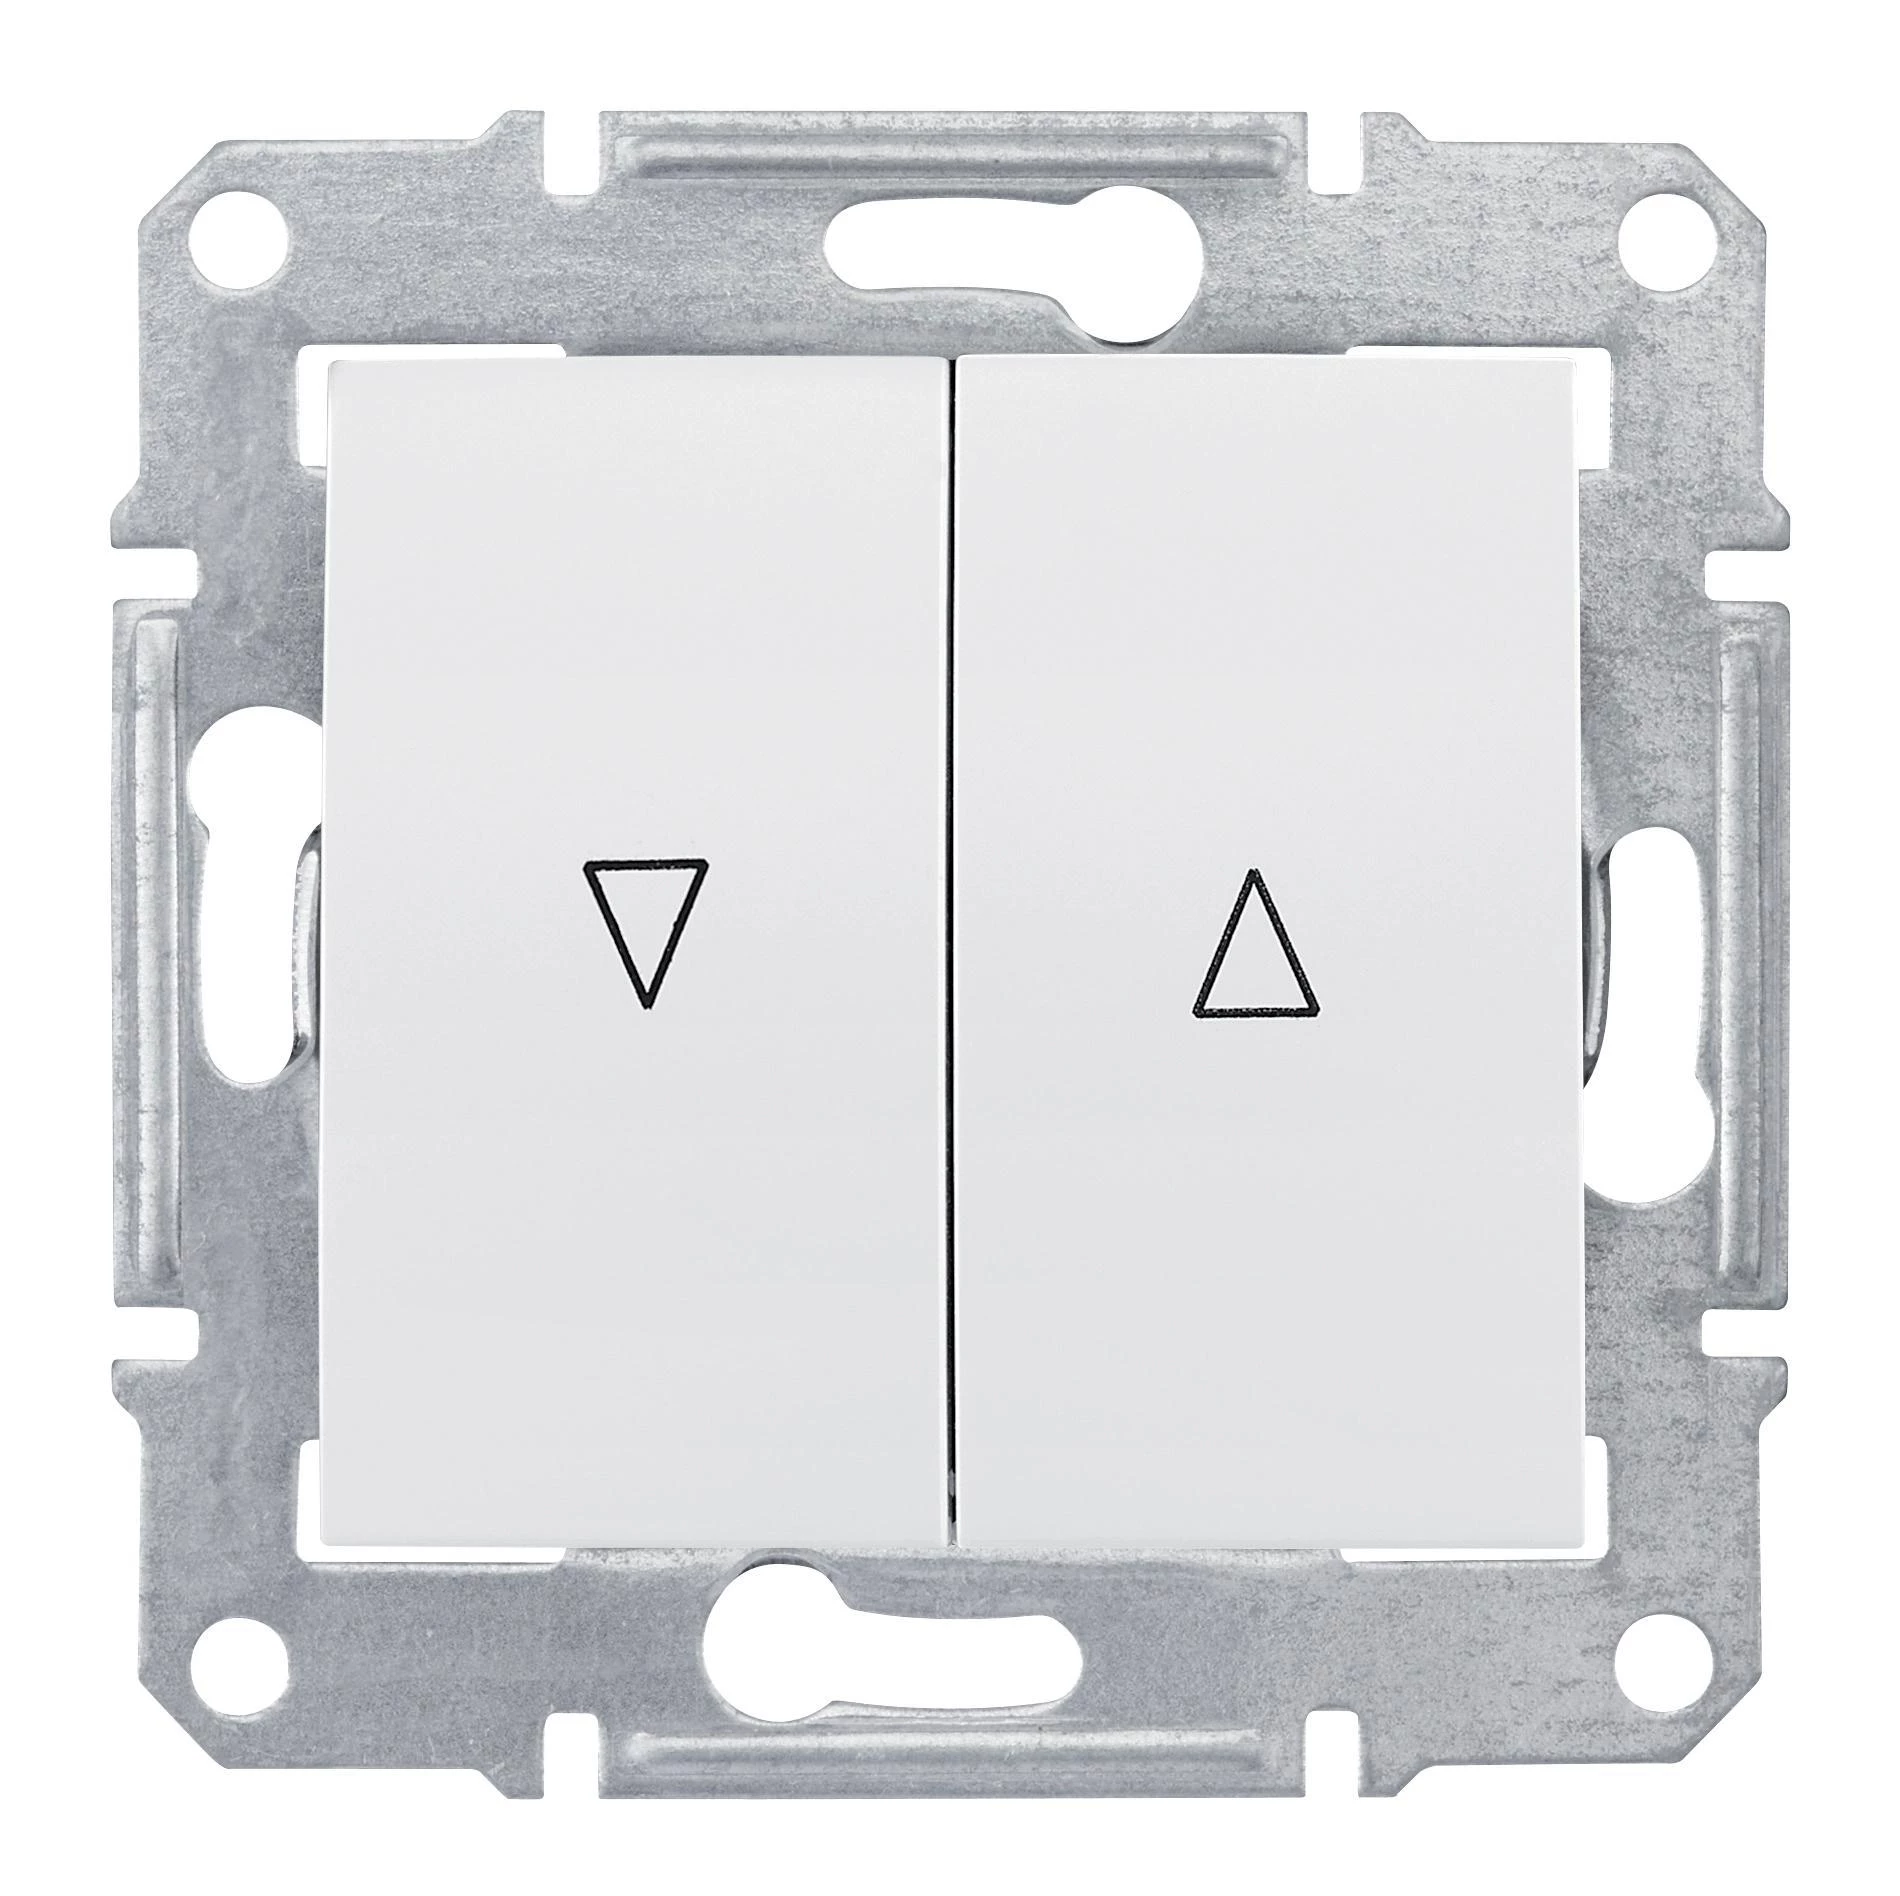  артикул SDN1300121 название Выключатель для жалюзи (рольставней) кнопочный , Белый, серия Sedna, Schneider Electric